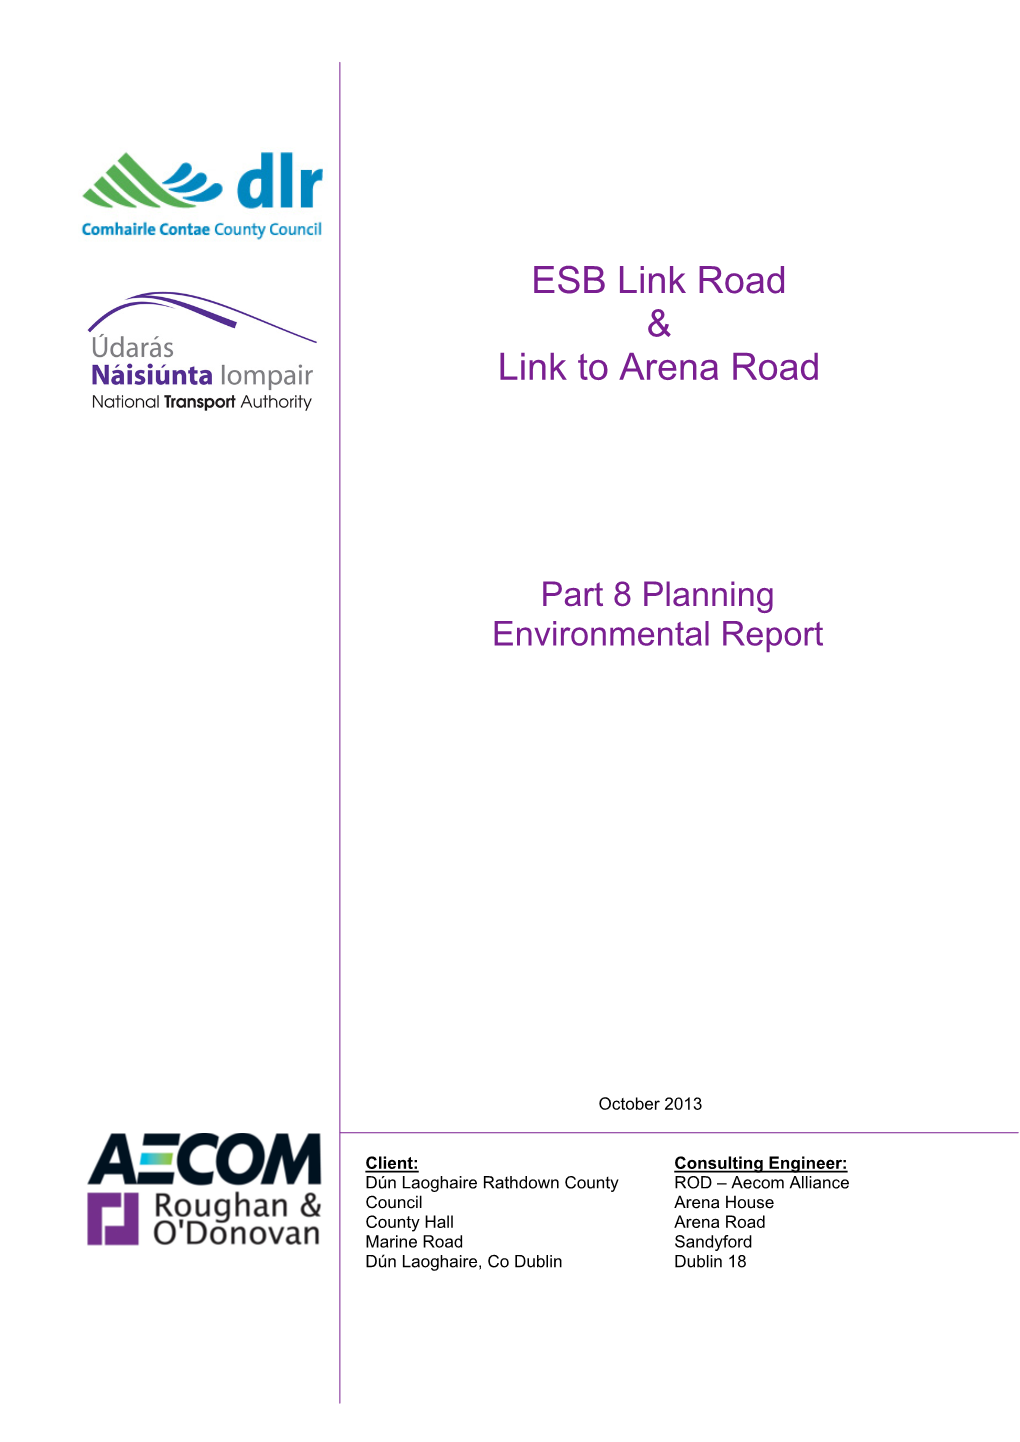 ESB Link Road & Link to Arena Road